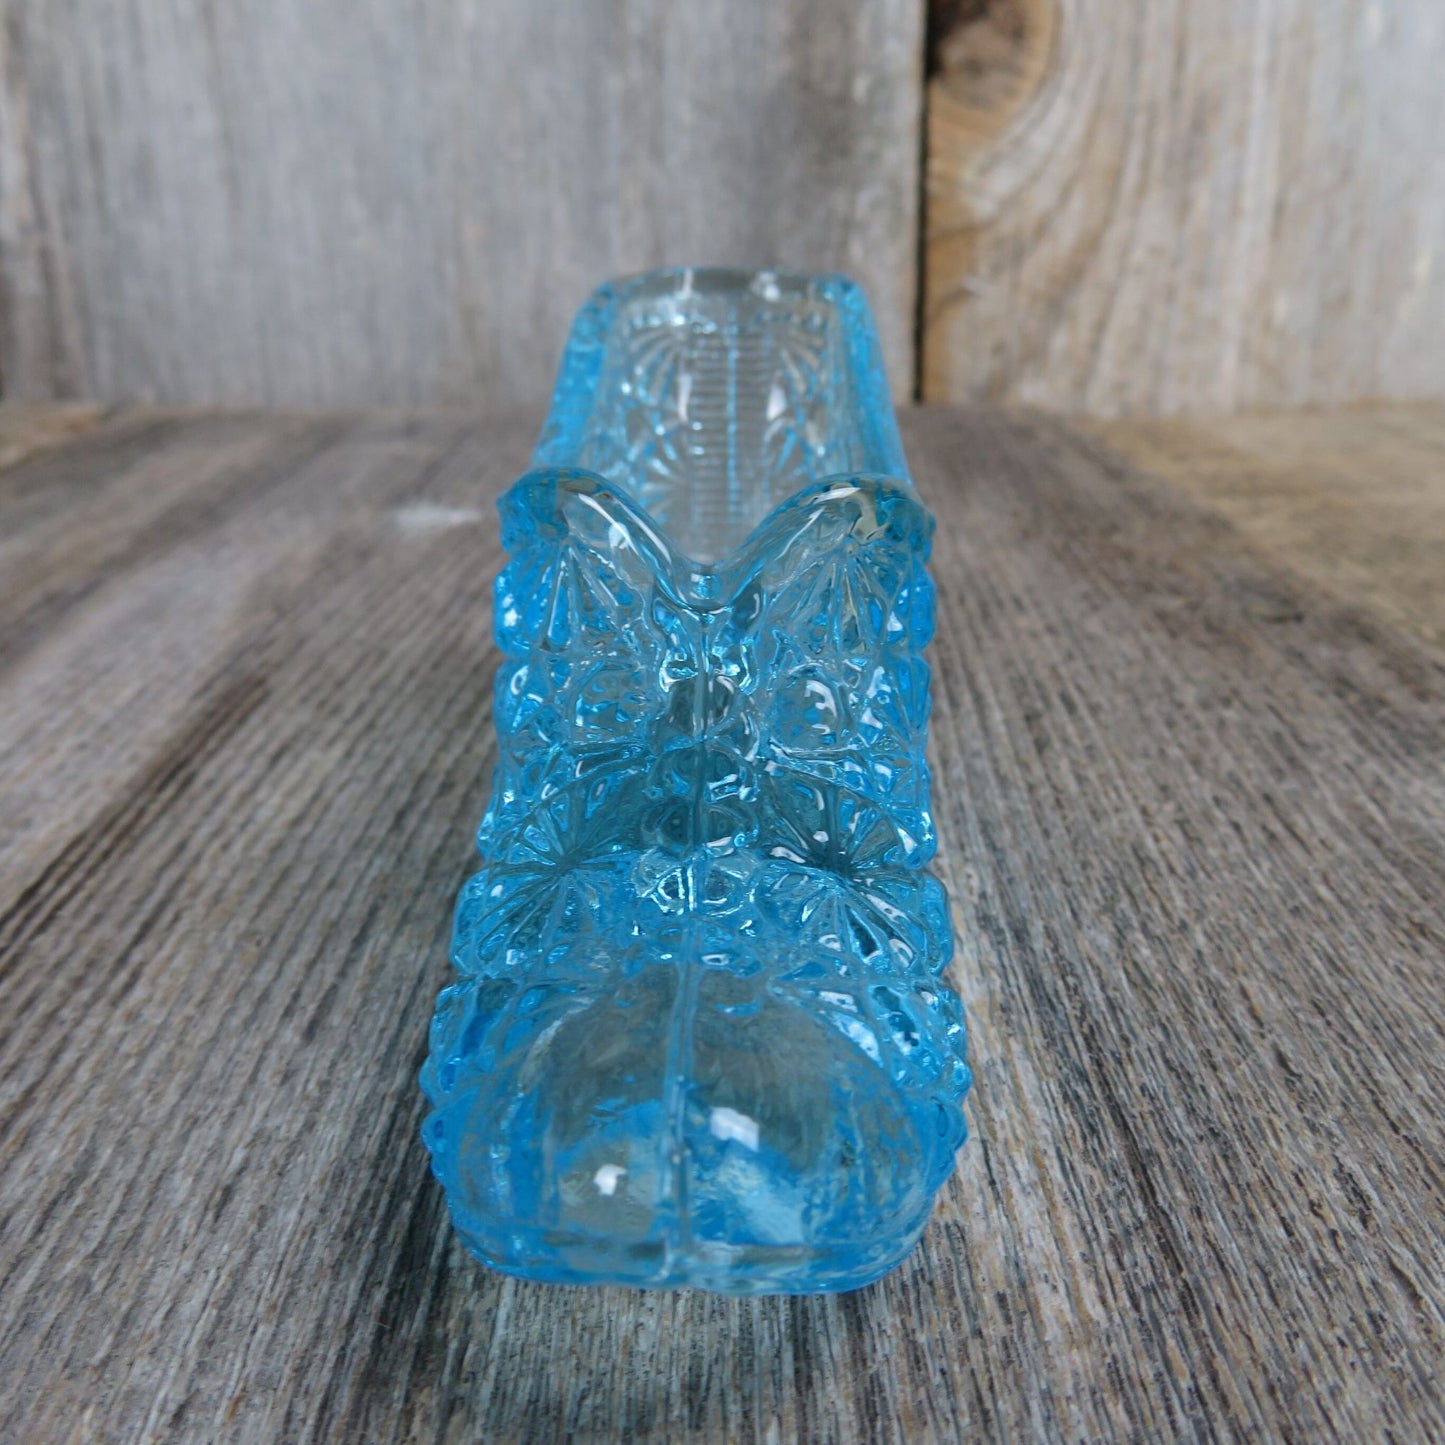 Vintage Blue Glass Slipper Vase Figurine Shoe Shaped Starburst Embossed Teal Colored Dish